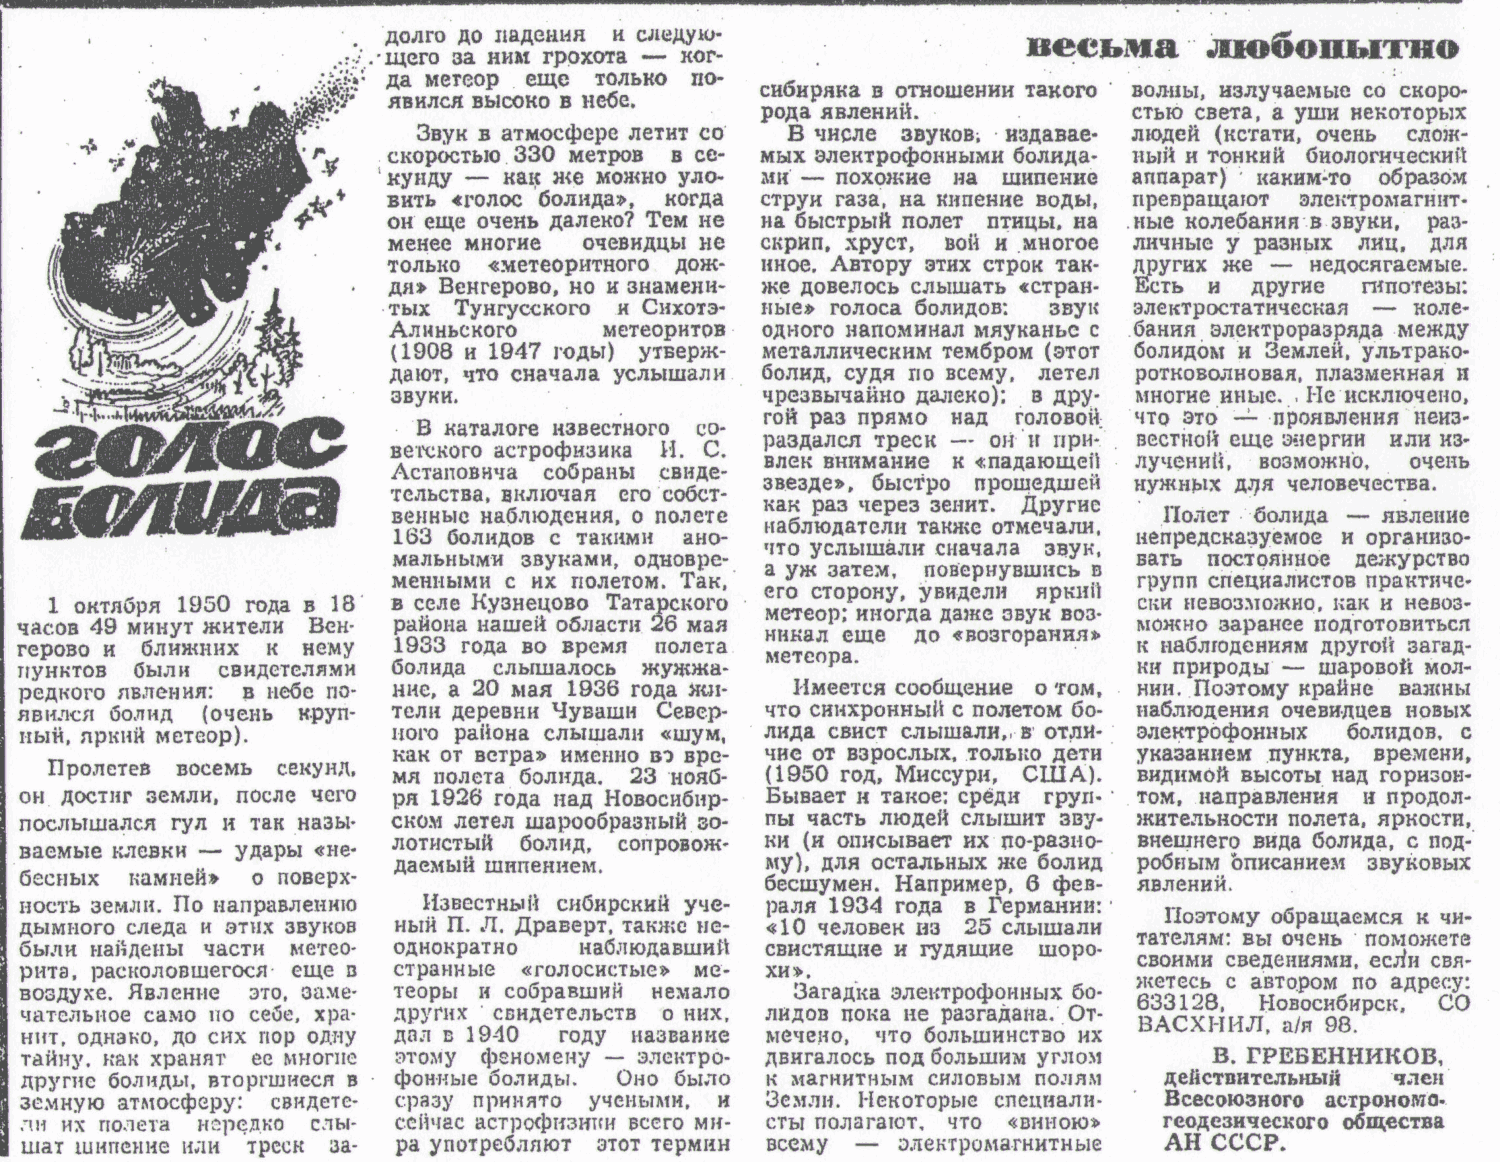 Голос болида. В.С. Гребенников. Советская Сибирь, 23.08.1983.